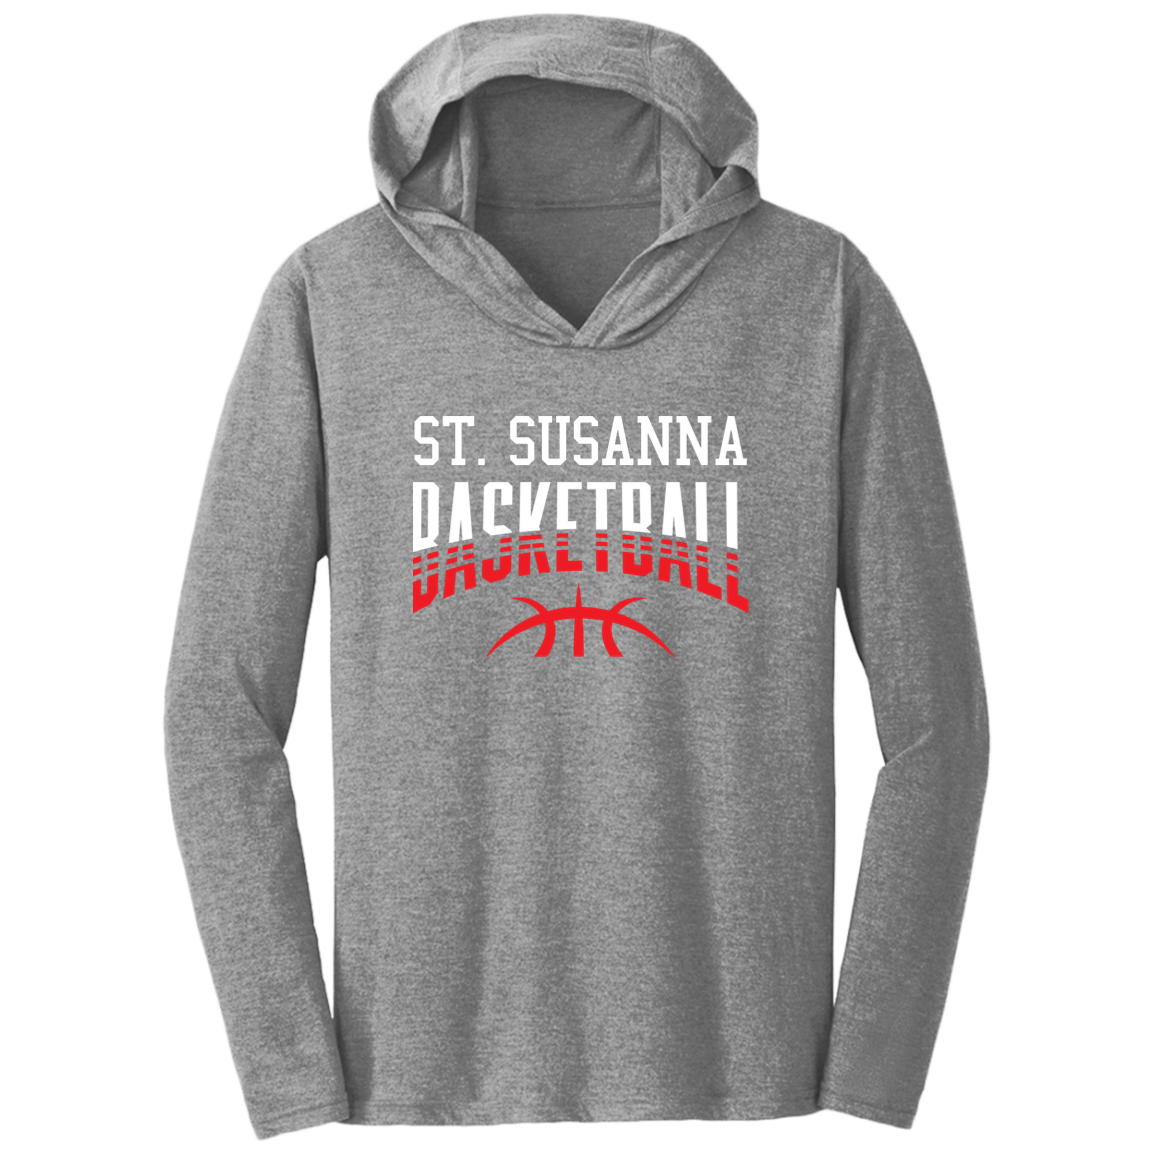 St. Susanna Basketball Fade Triblend T-Shirt Hoodie